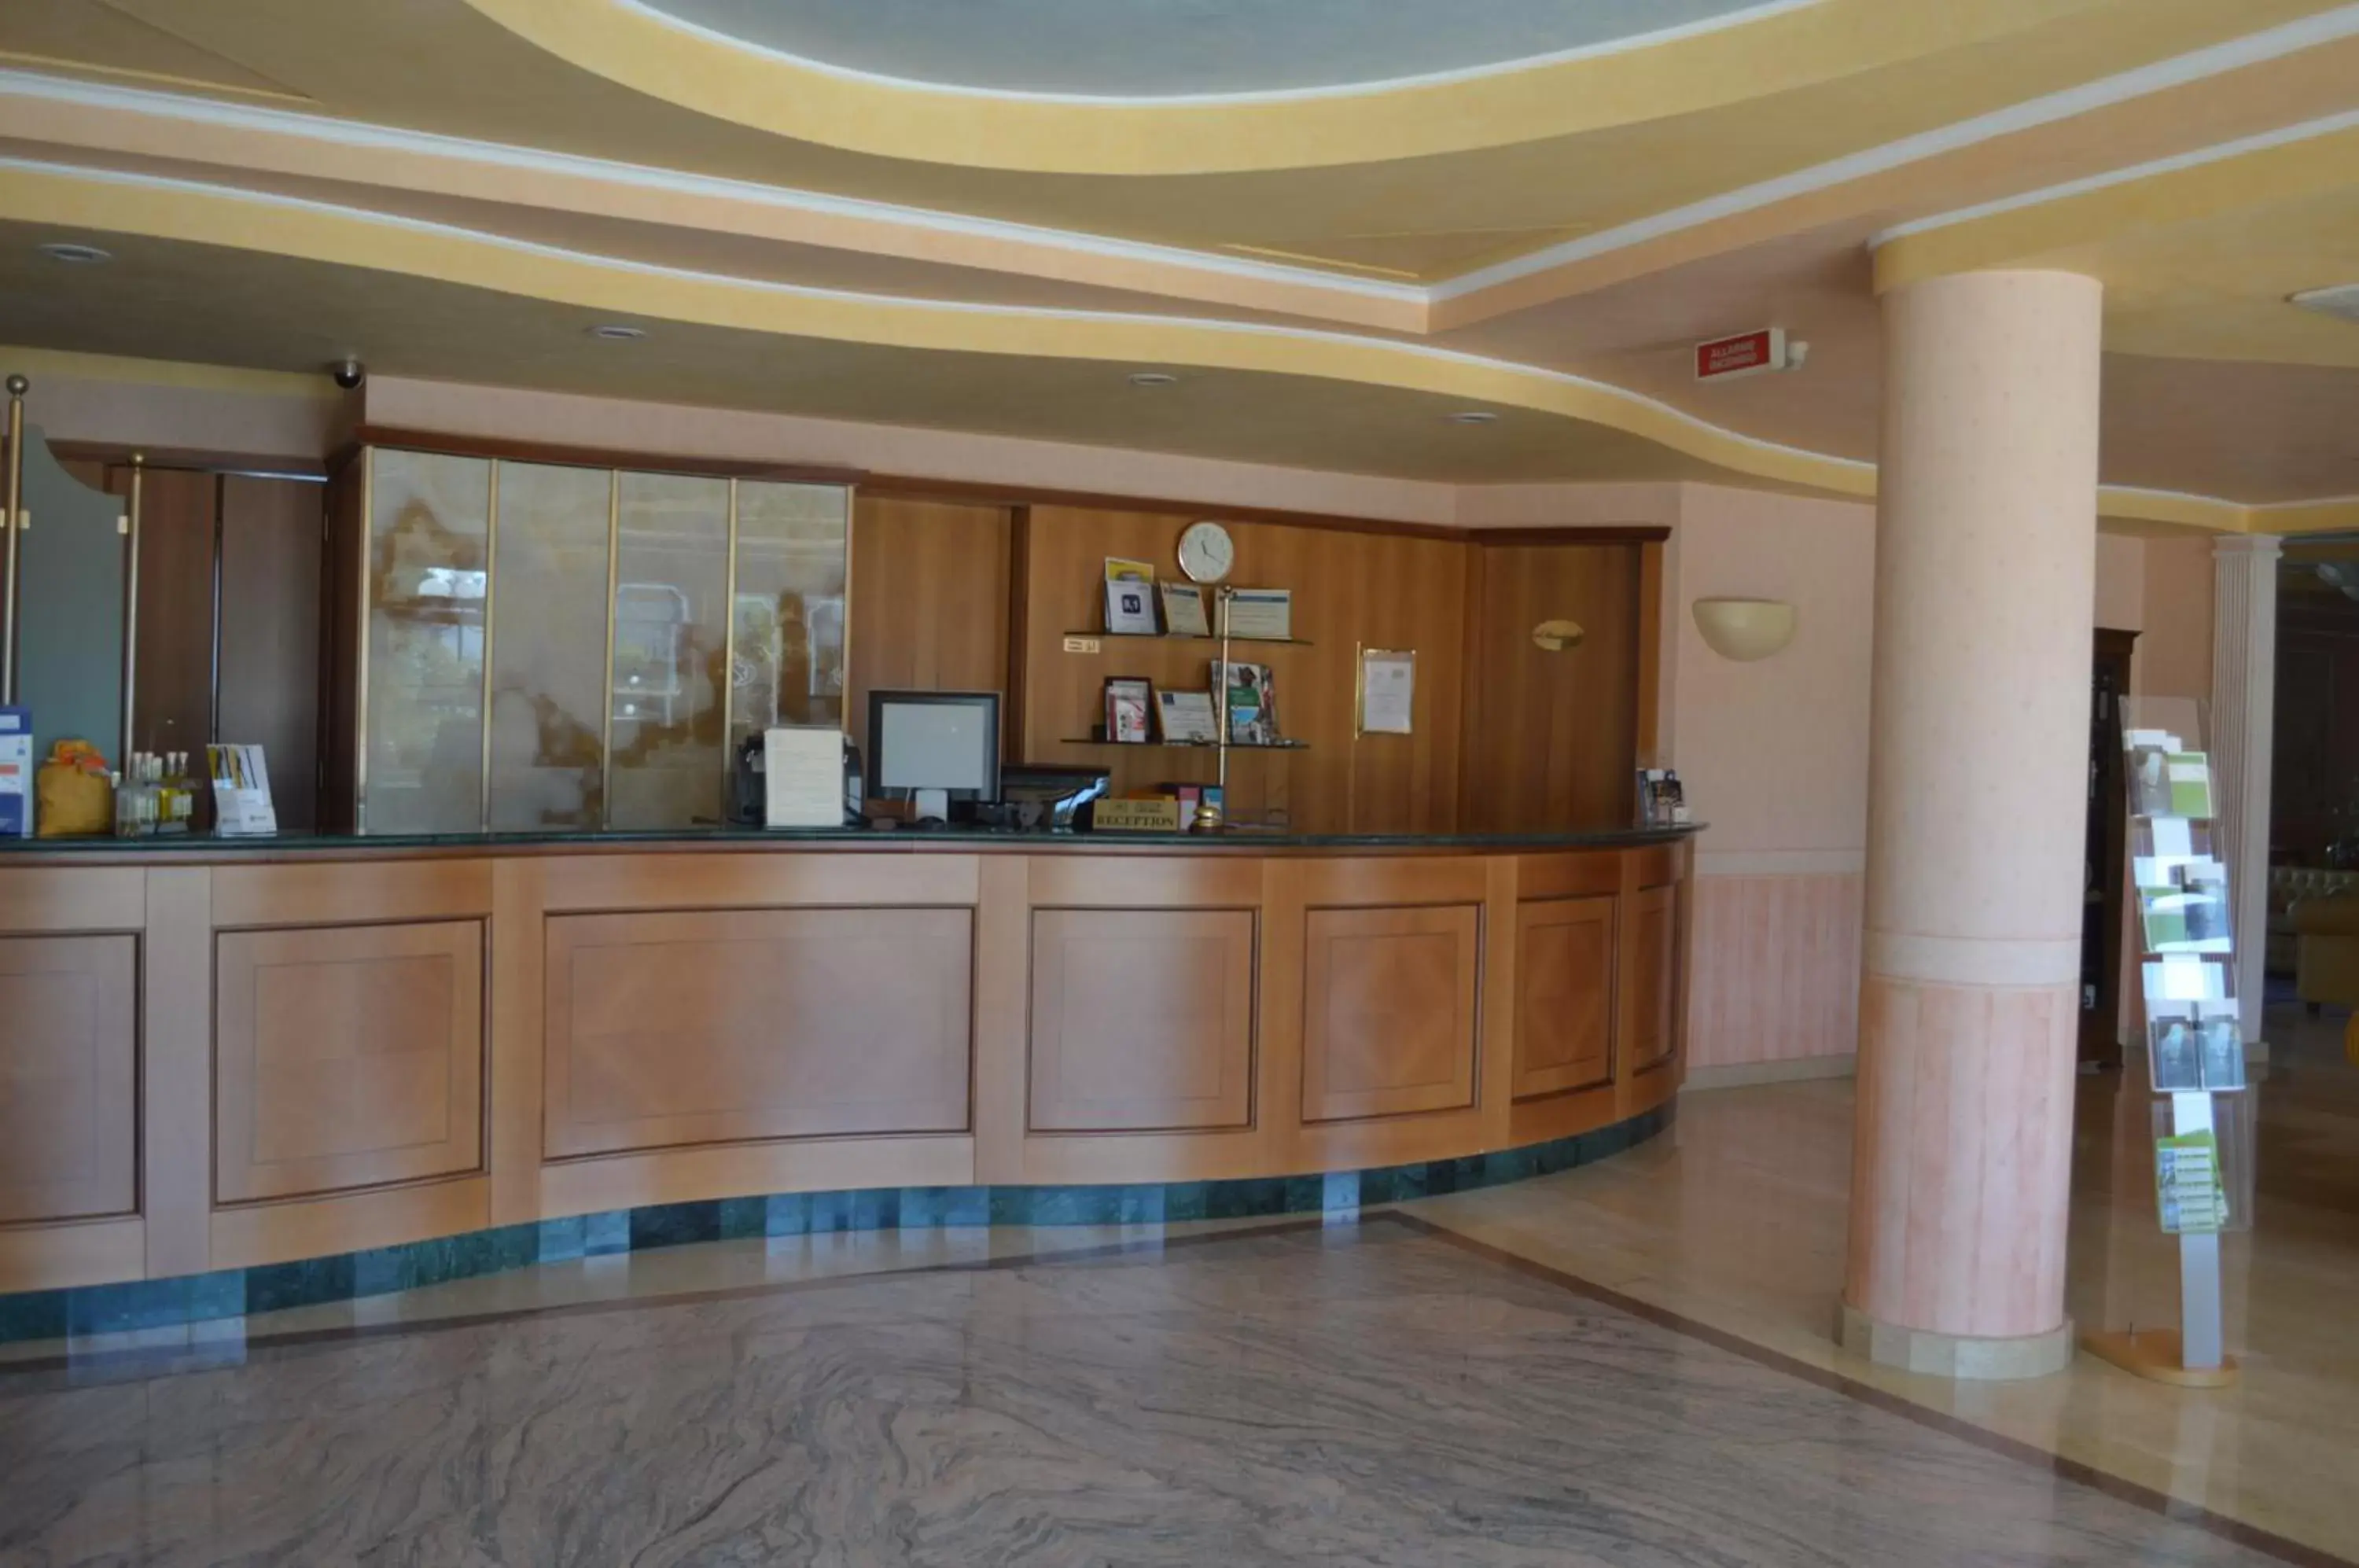 Lobby or reception, Lobby/Reception in Hotel Parco Serrone